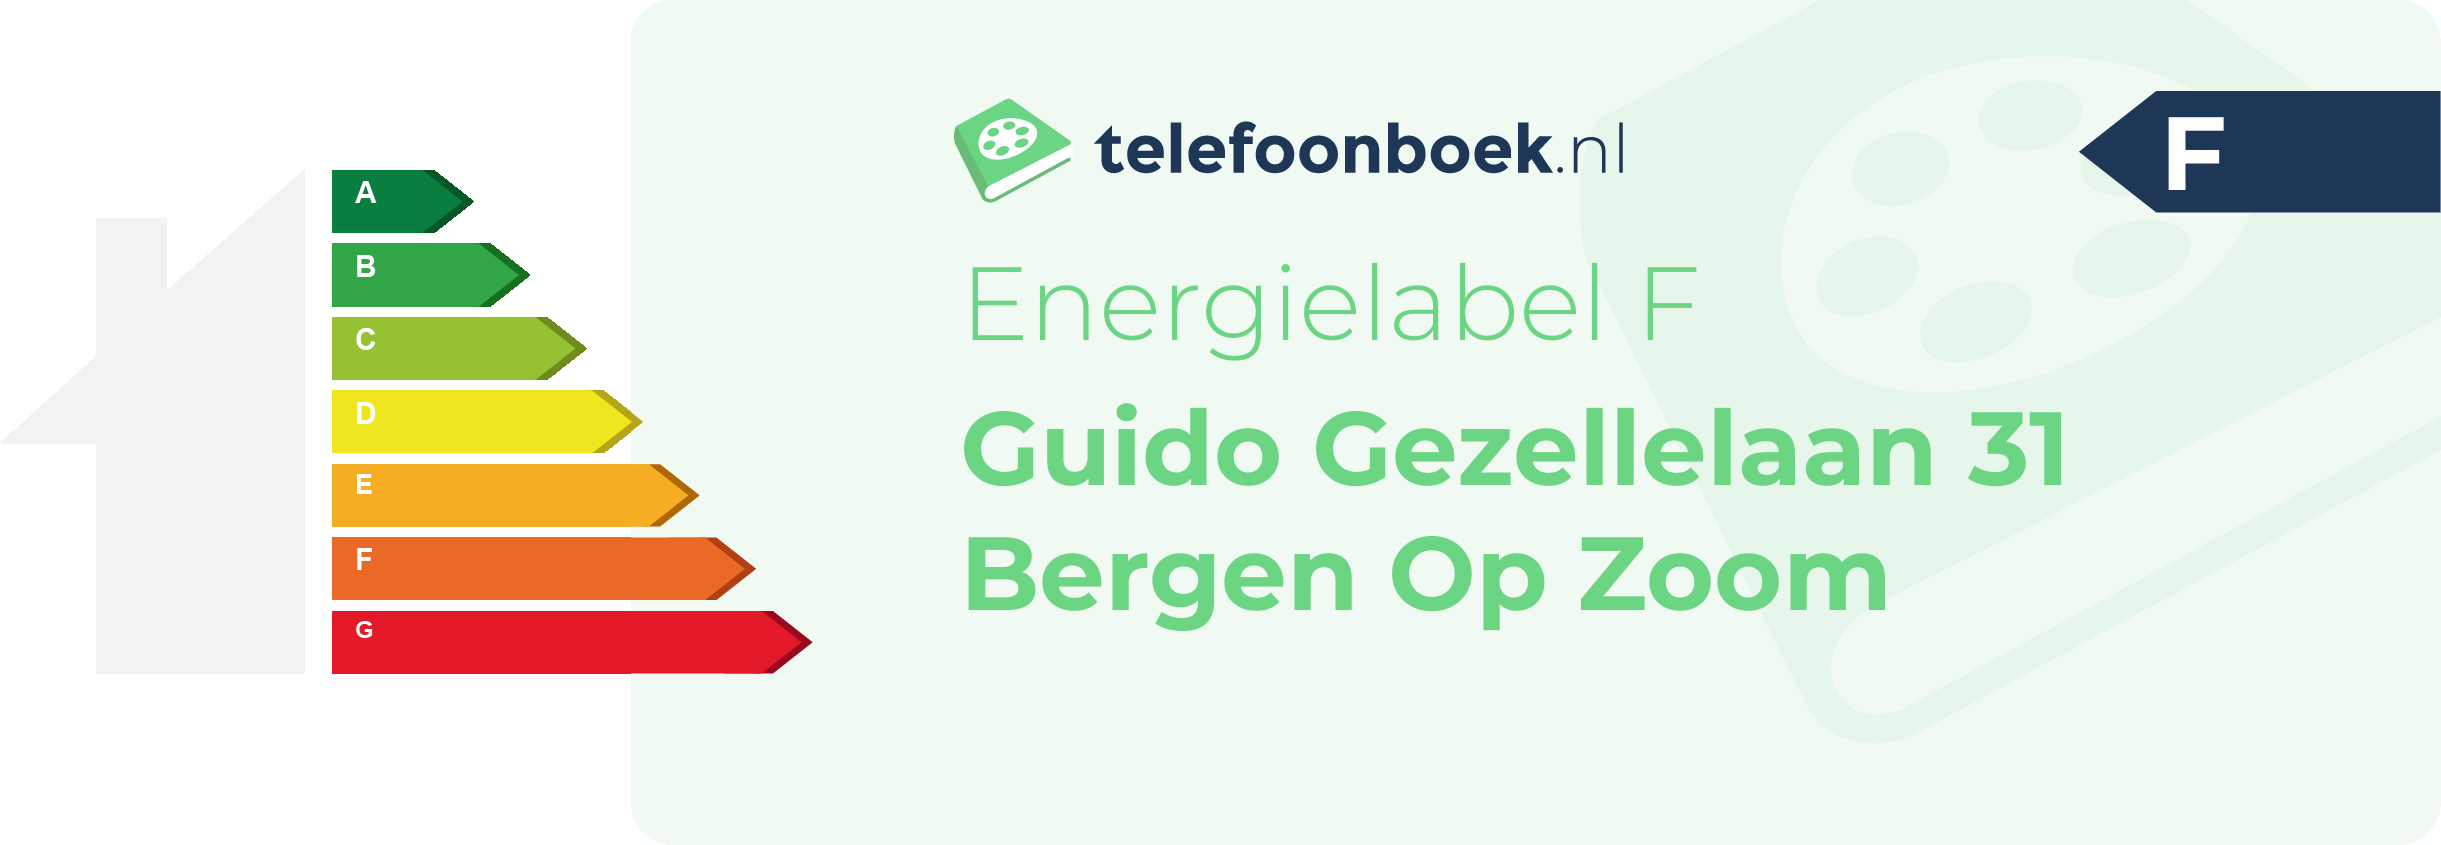 Energielabel Guido Gezellelaan 31 Bergen Op Zoom